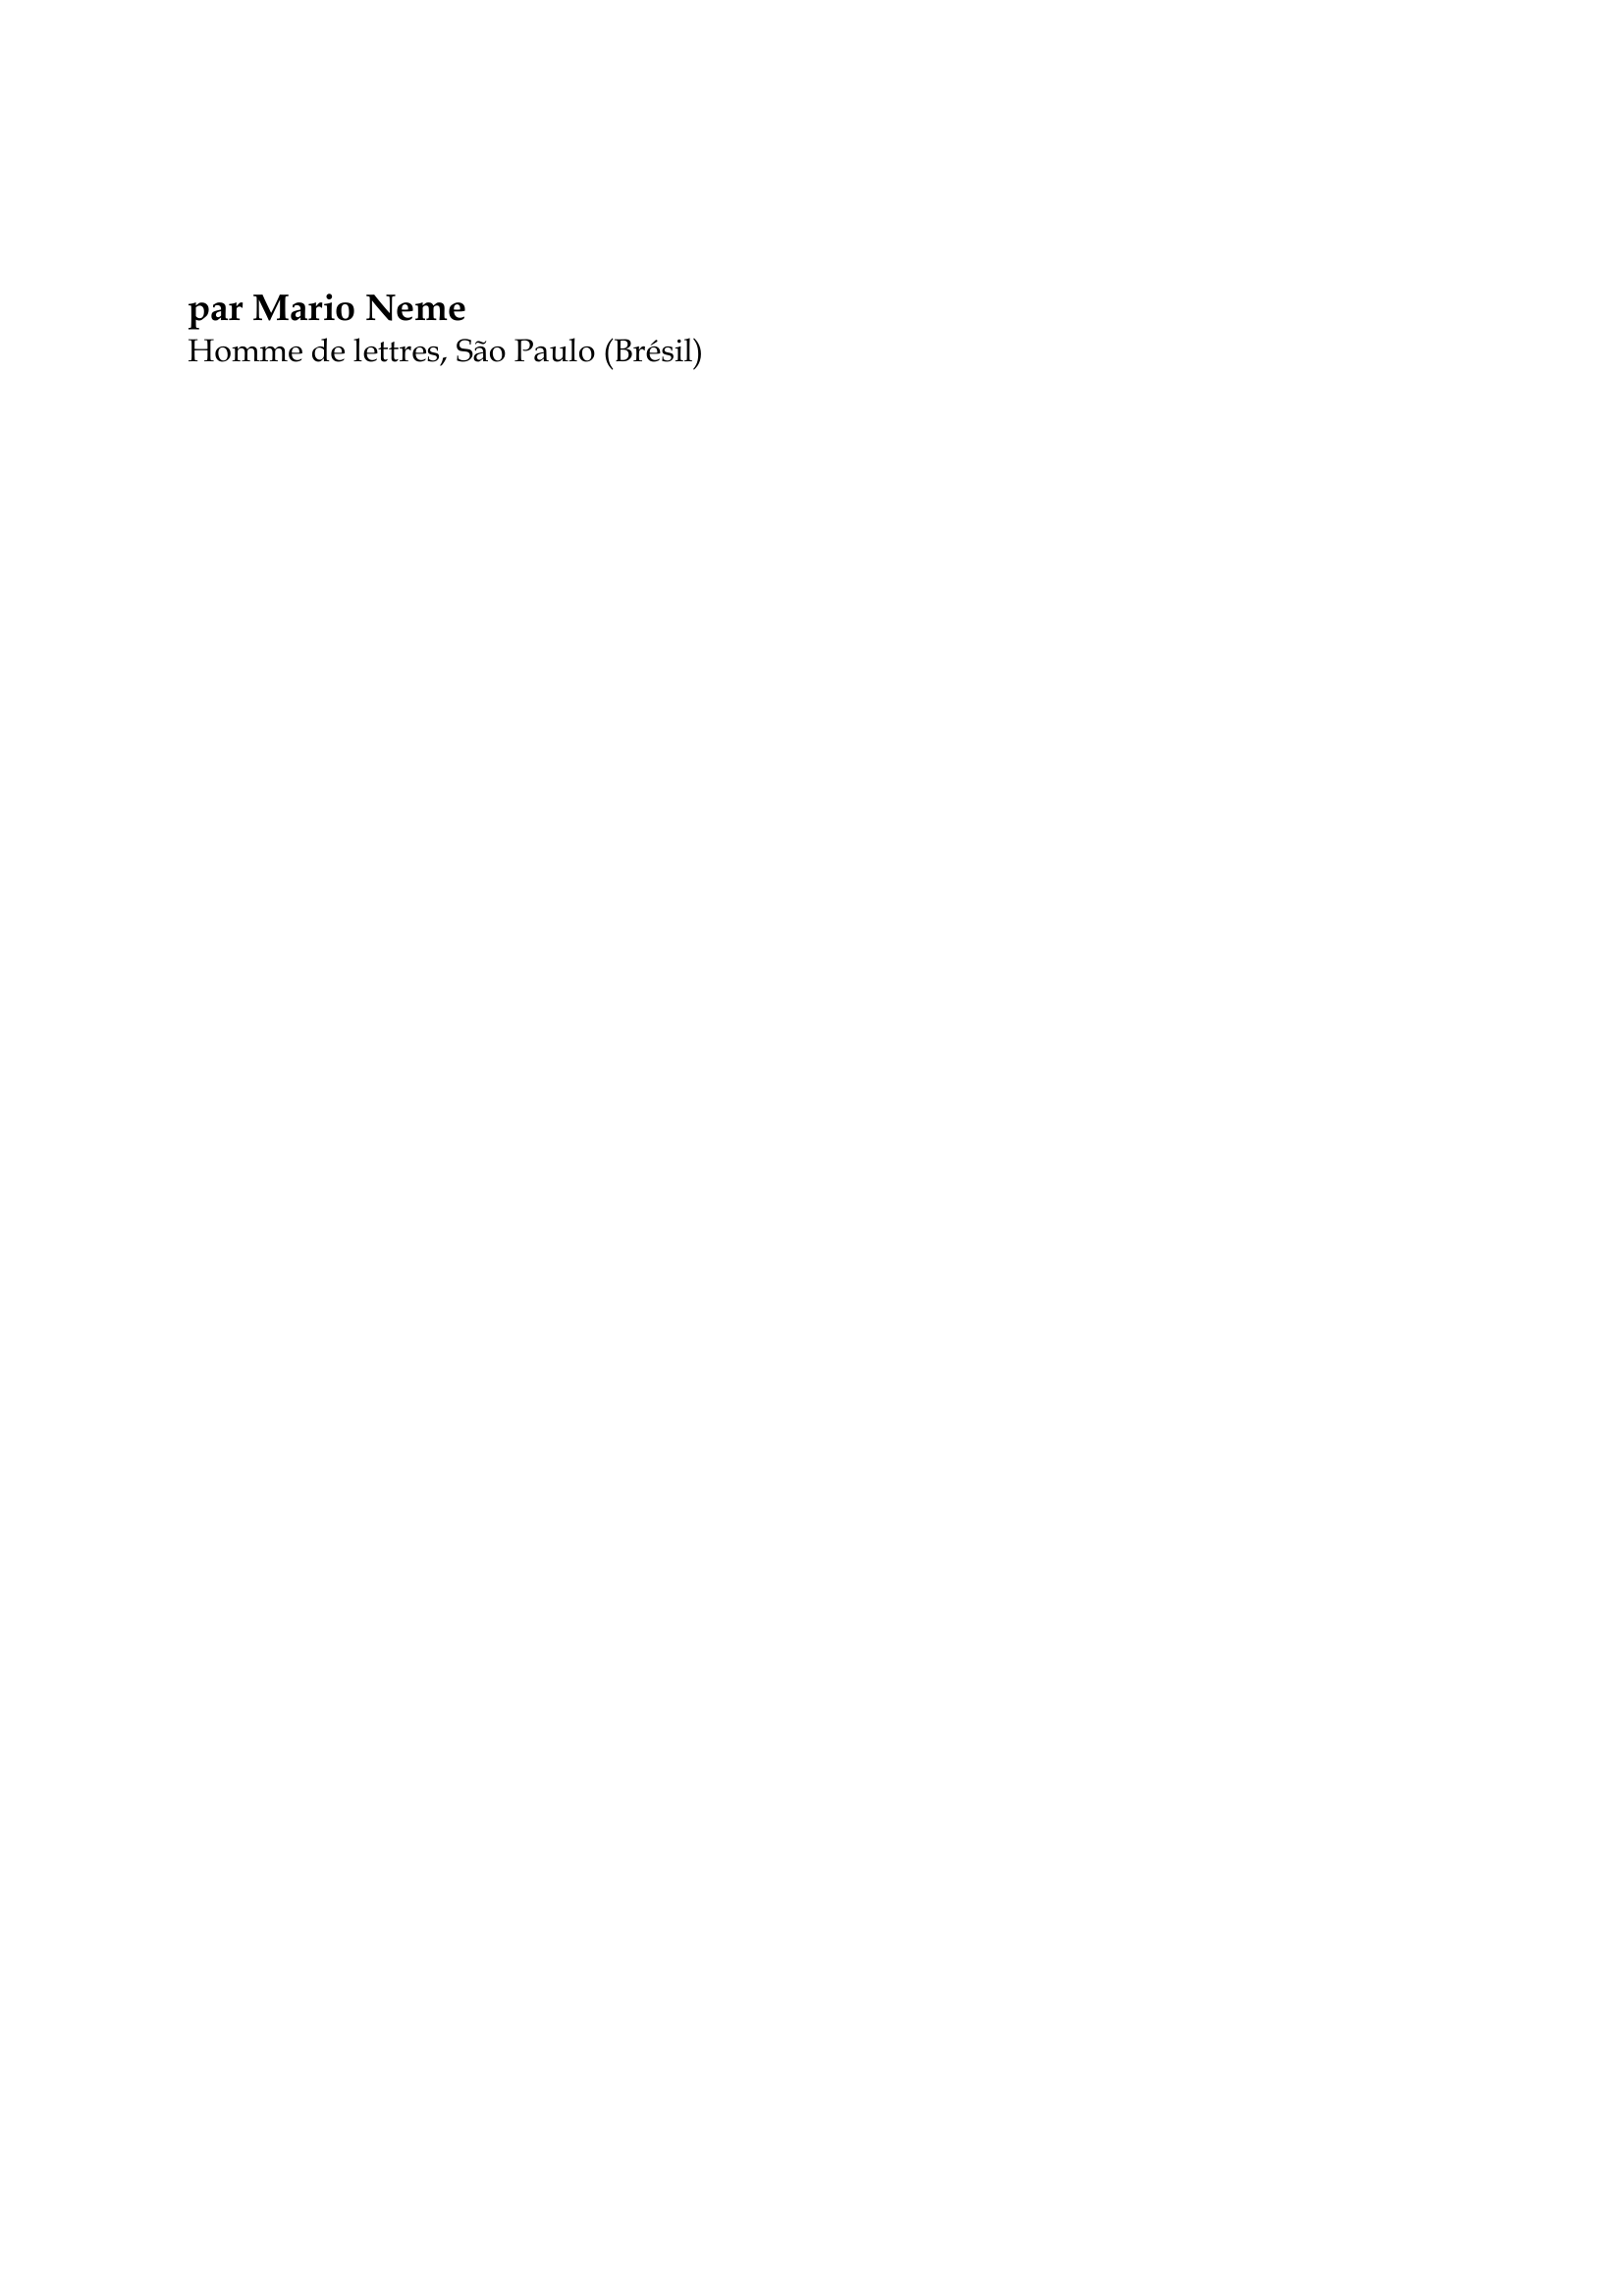 Prévisualisation du document Auguste de Saint-Hilaire

par Mario Neme
Homme de lettres, São Paulo (Brésil)

Augustin-François-César